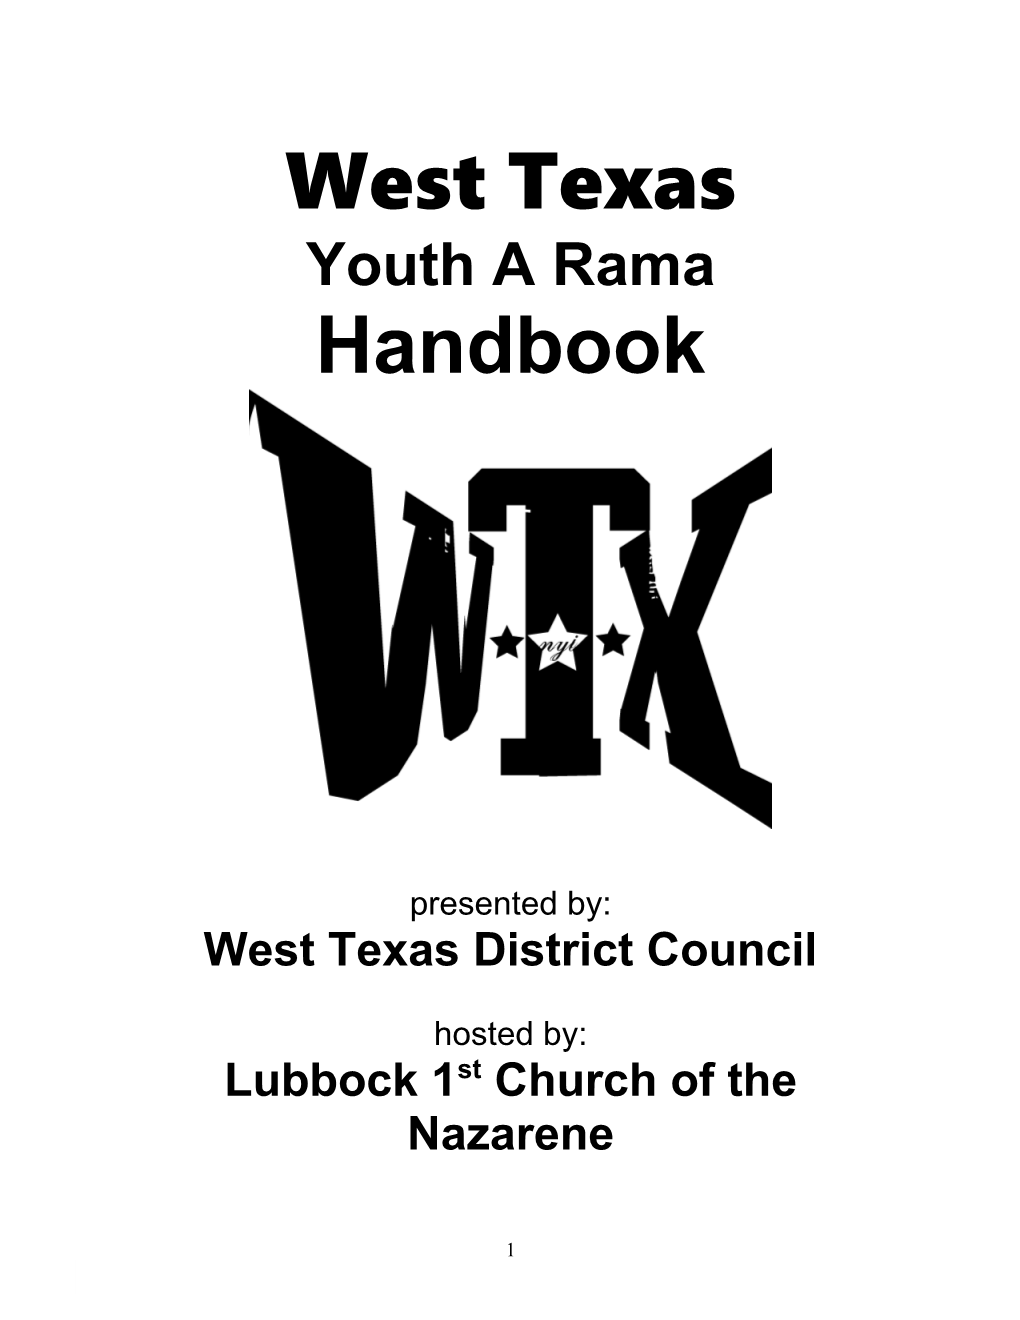 West Texas District Council